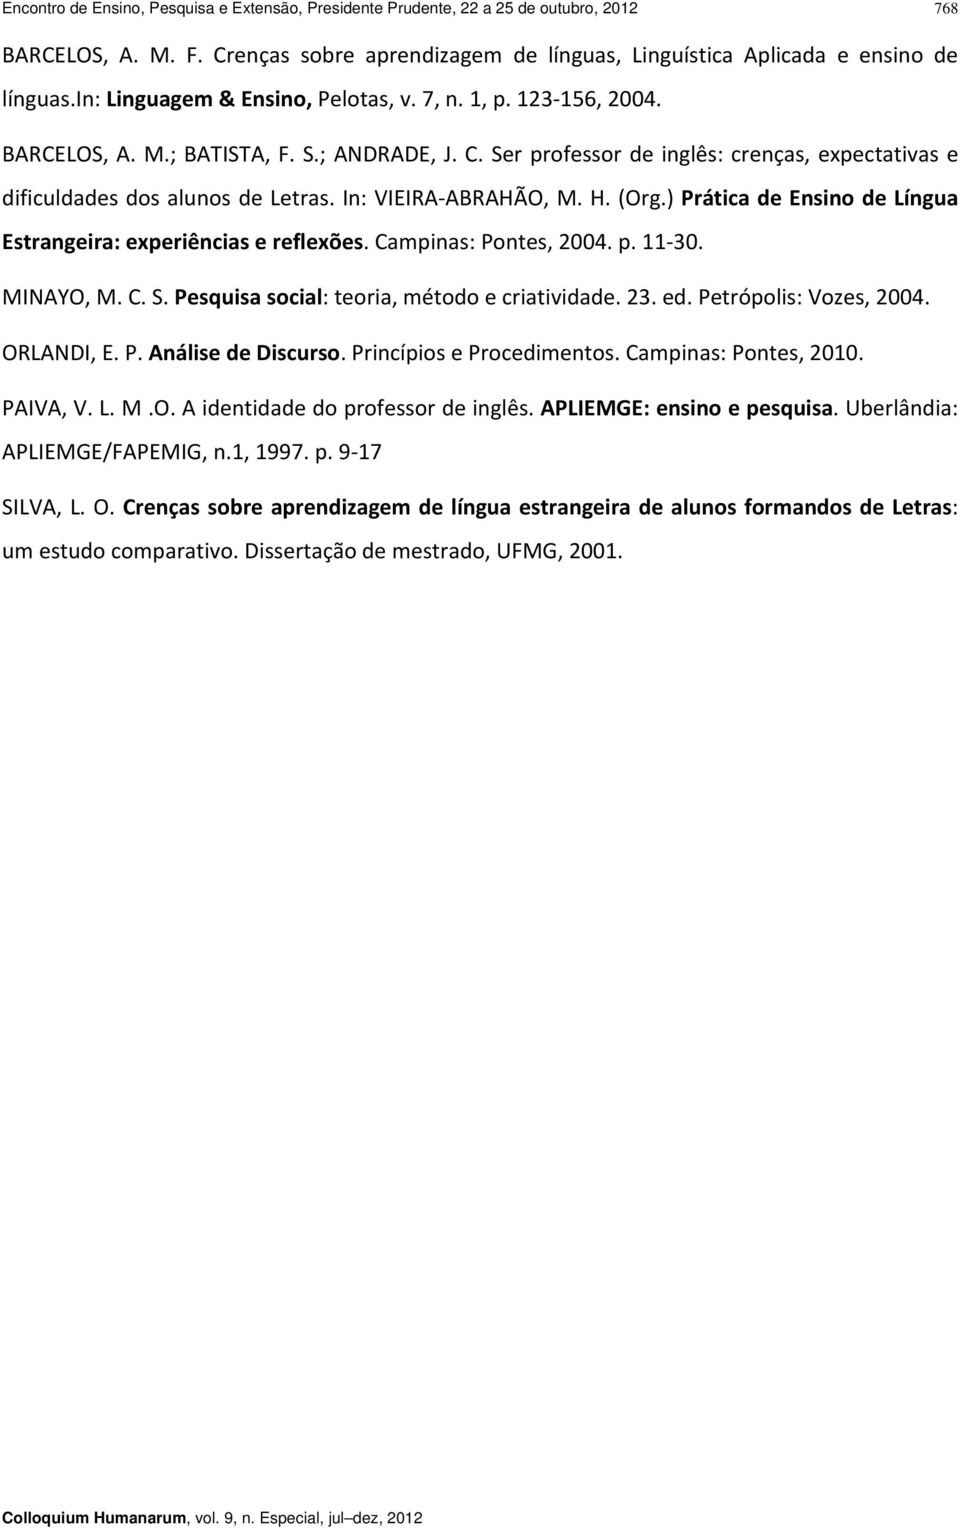 In: VIEIRA ABRAHÃO, M. H. (Org.) Prática de Ensino de Língua Estrangeira: experiências e reflexões. Campinas: Pontes, 2004. p. 11 30. MINAYO, M. C. S. Pesquisa social: teoria, método e criatividade.